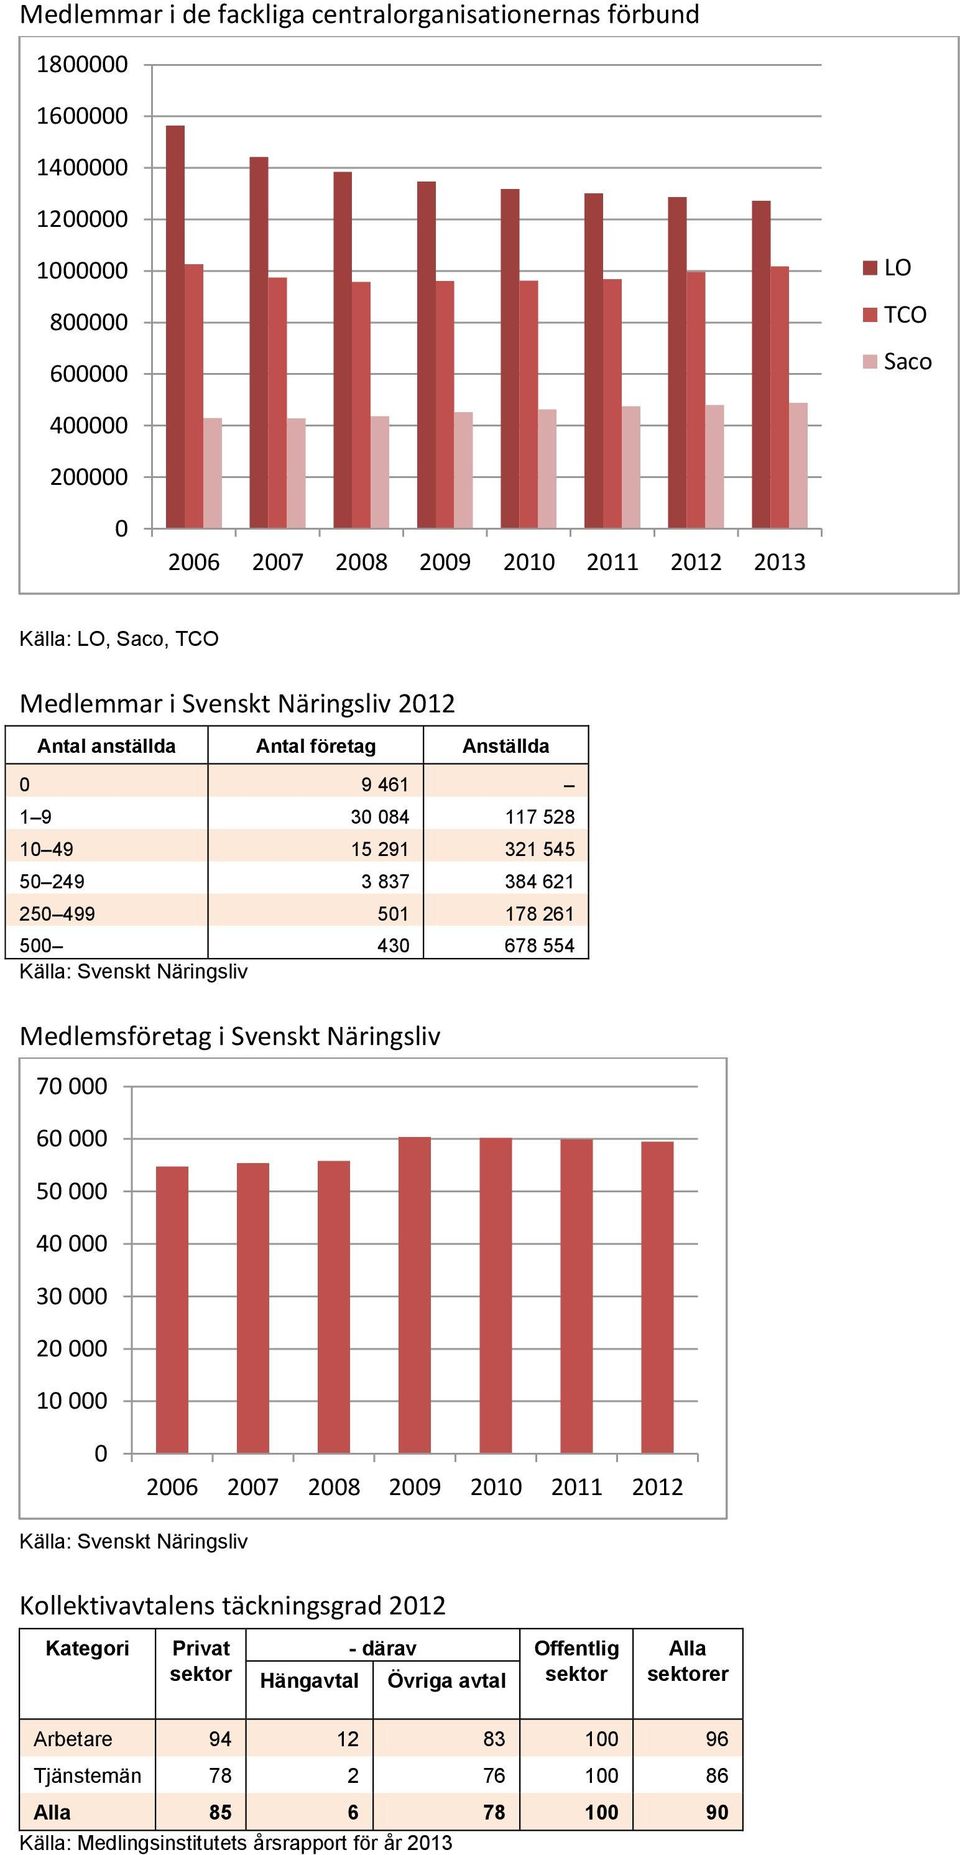 Näringsliv Medlemsföretag i Svenskt Näringsliv 70 000 60 000 50 000 40 000 30 000 20 000 10 000 0 2006 2007 2008 2009 2010 2011 2012 Källa: Svenskt Näringsliv Kollektivavtalens täckningsgrad 2012